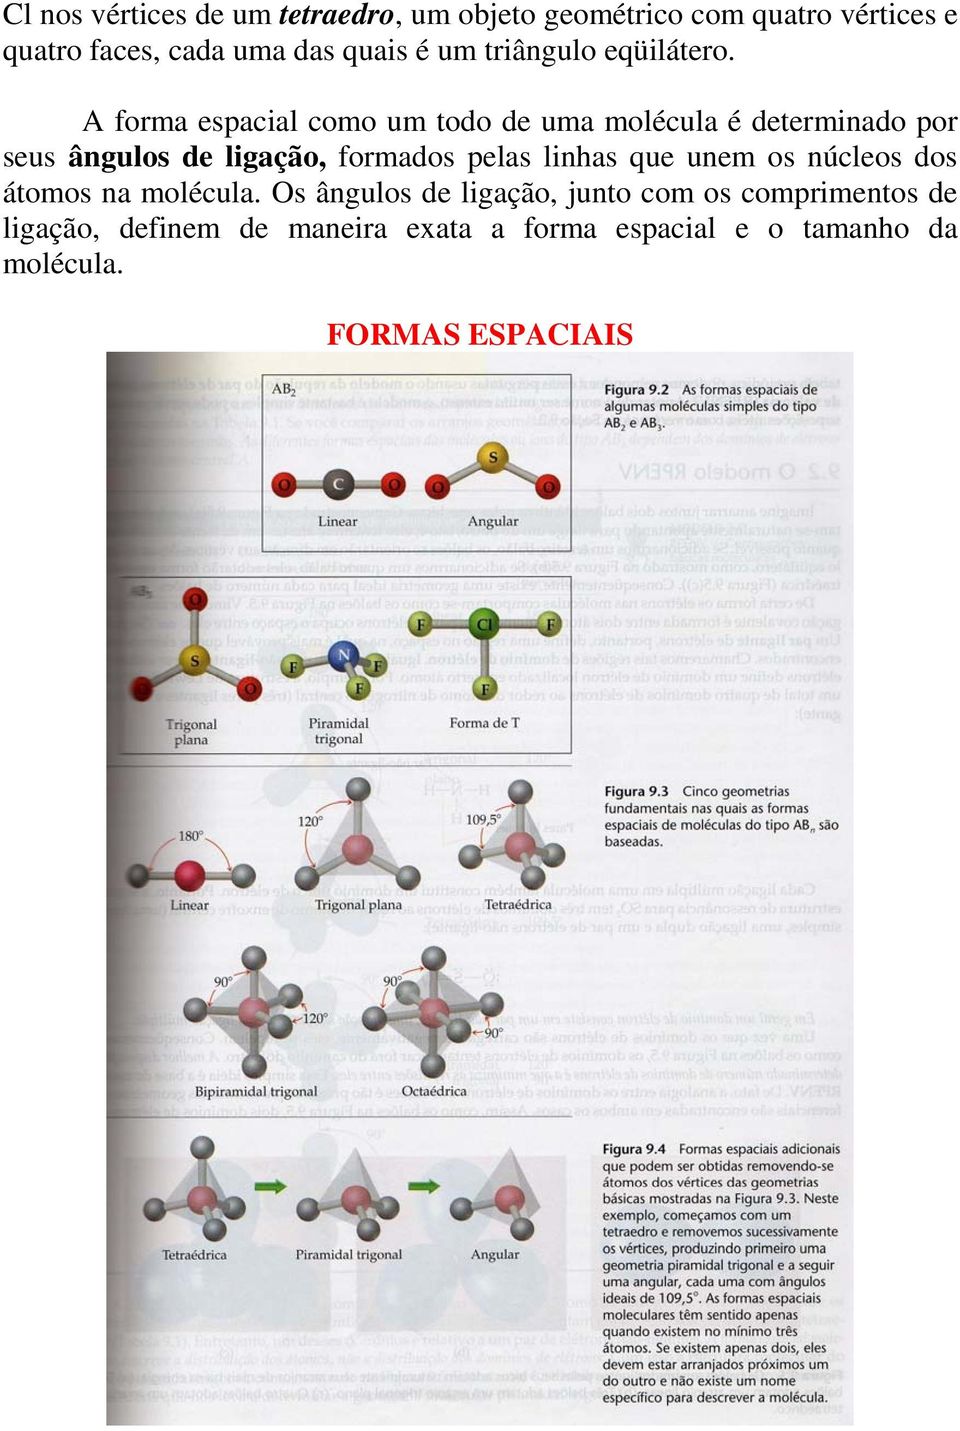 A forma espacial como um todo de uma molécula é determinado por seus ângulos de ligação, formados pelas